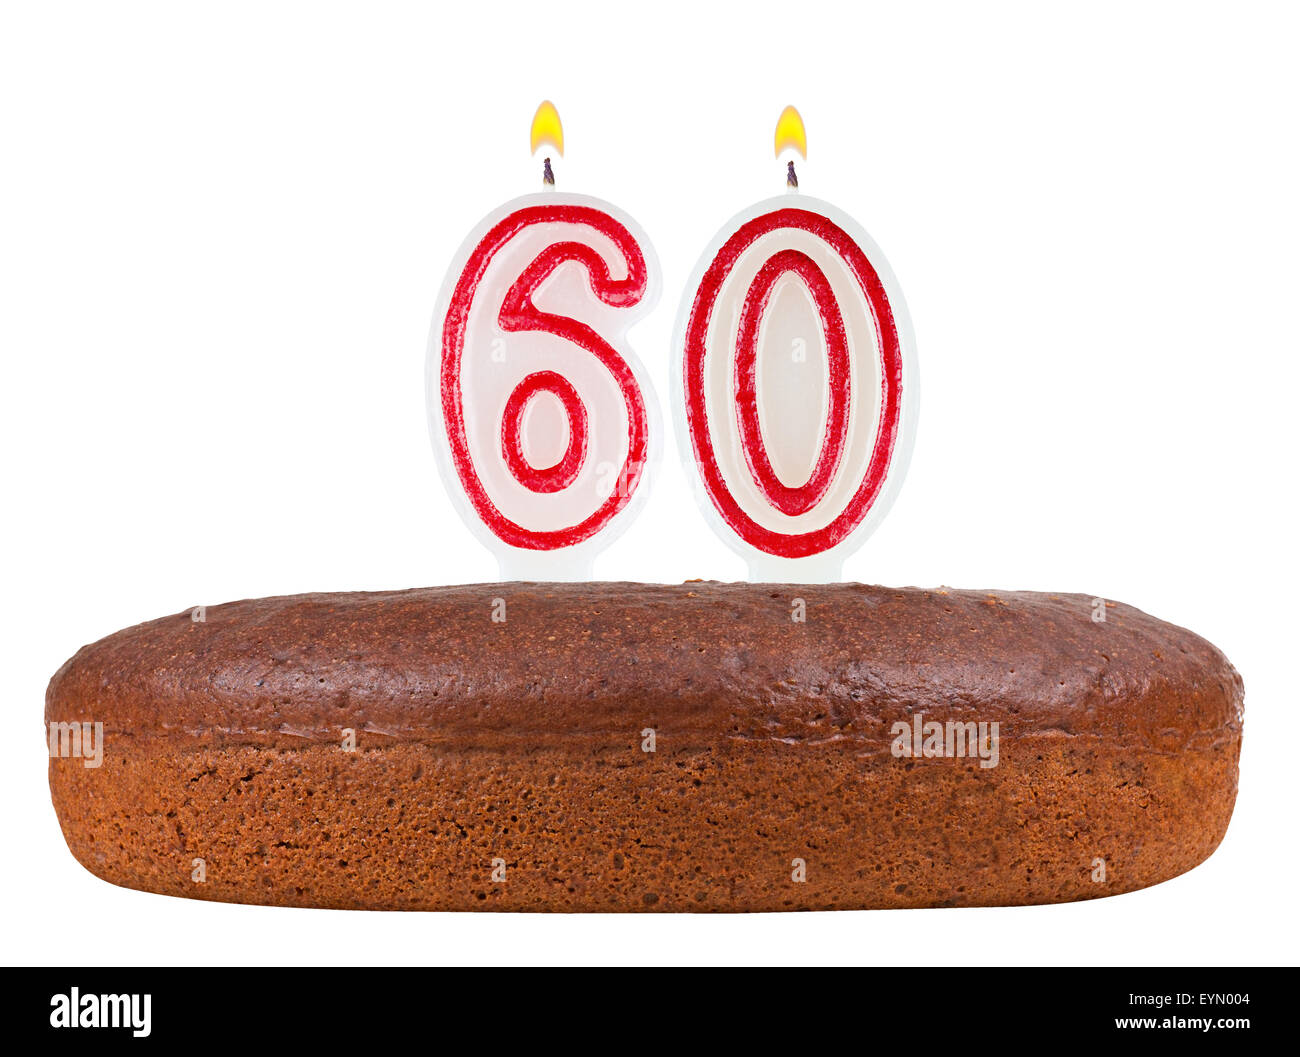 Torta di compleanno con il numero di candele 60 isolato su sfondo bianco Foto Stock